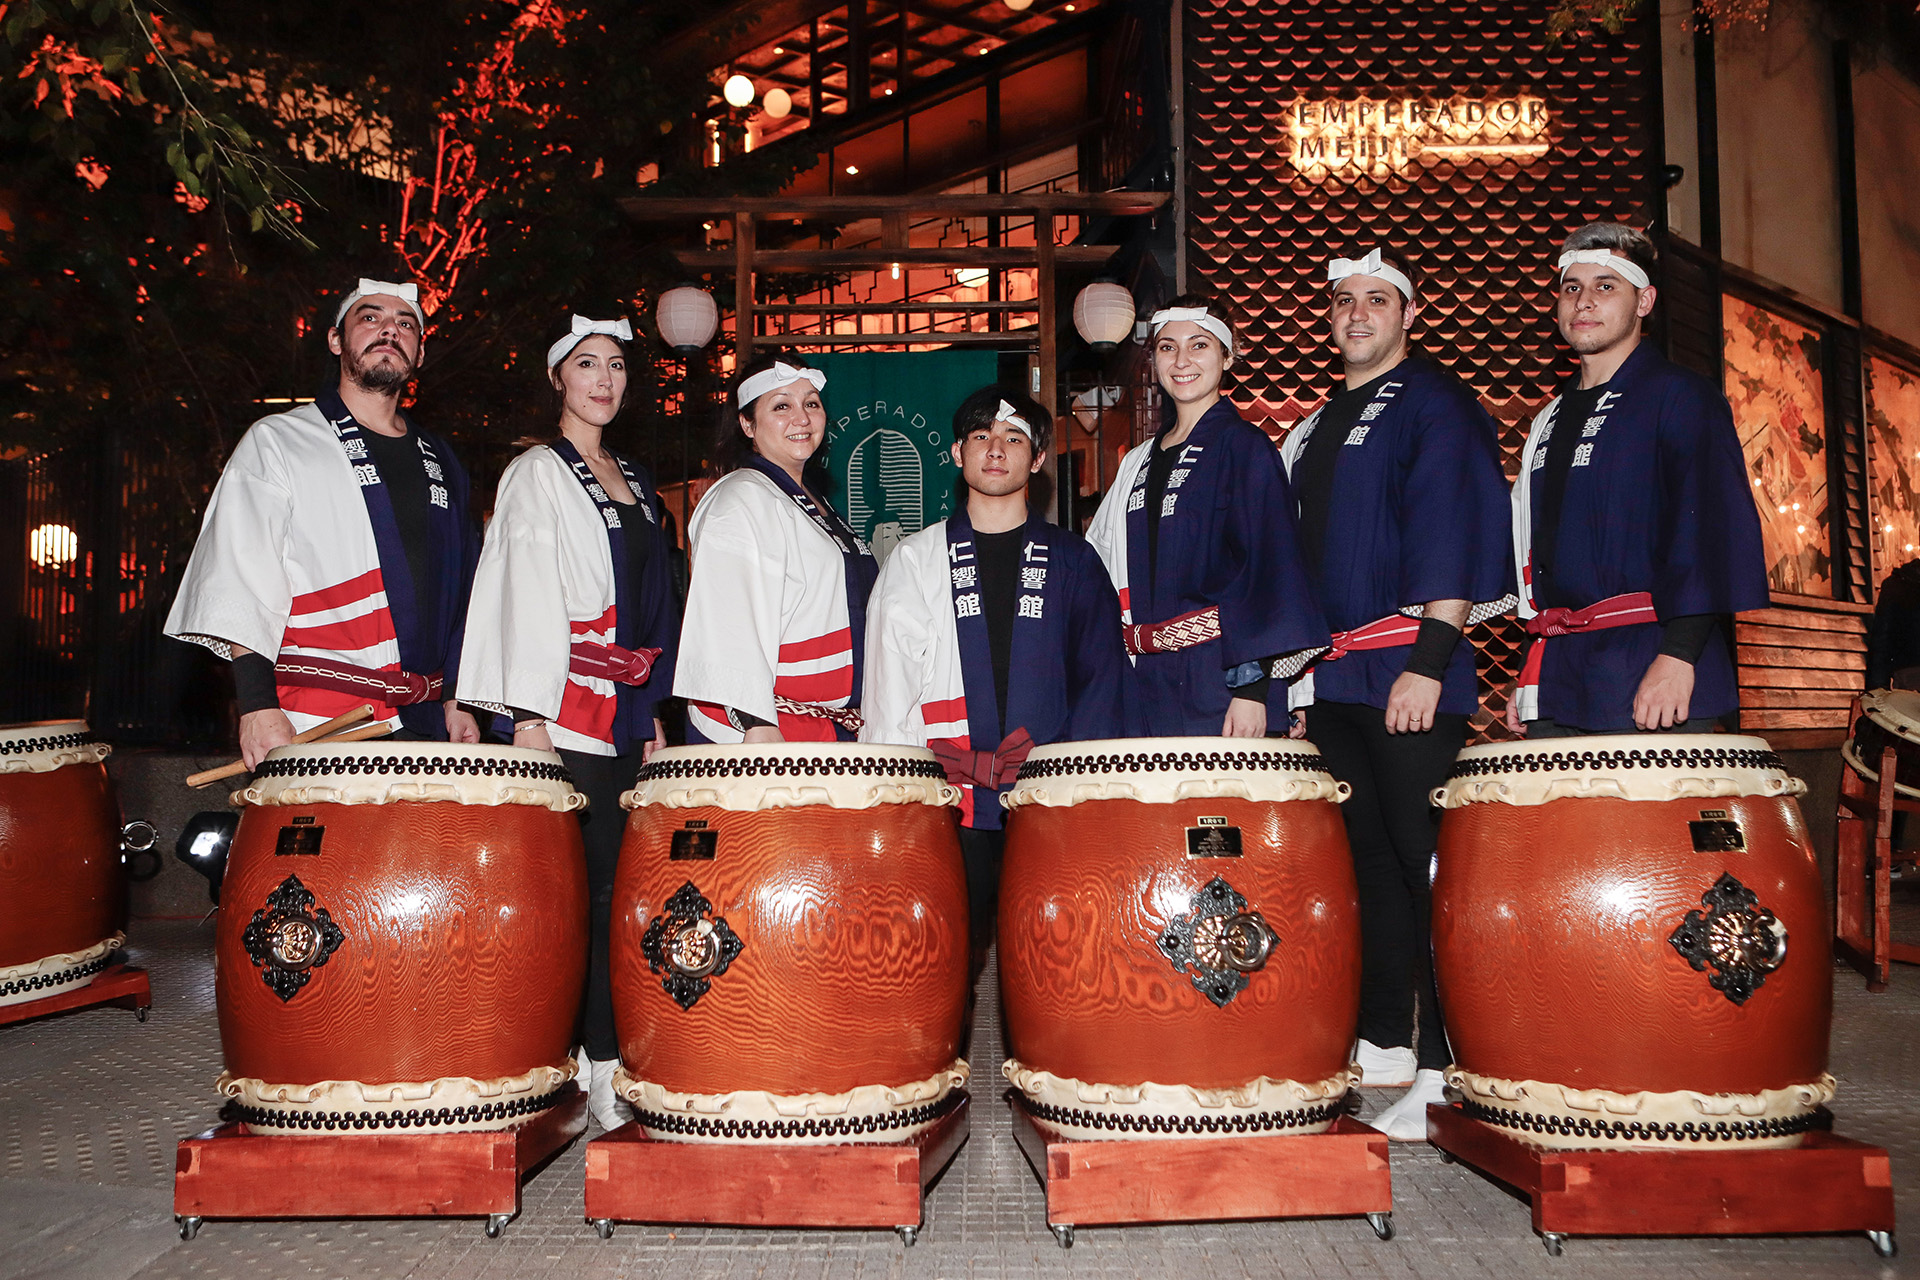 Los invitados se reunieron en una fantástica noche oriental, donde disfrutaron de un show de tambores japoneses y música al ritmo del Dj, Juan Maya